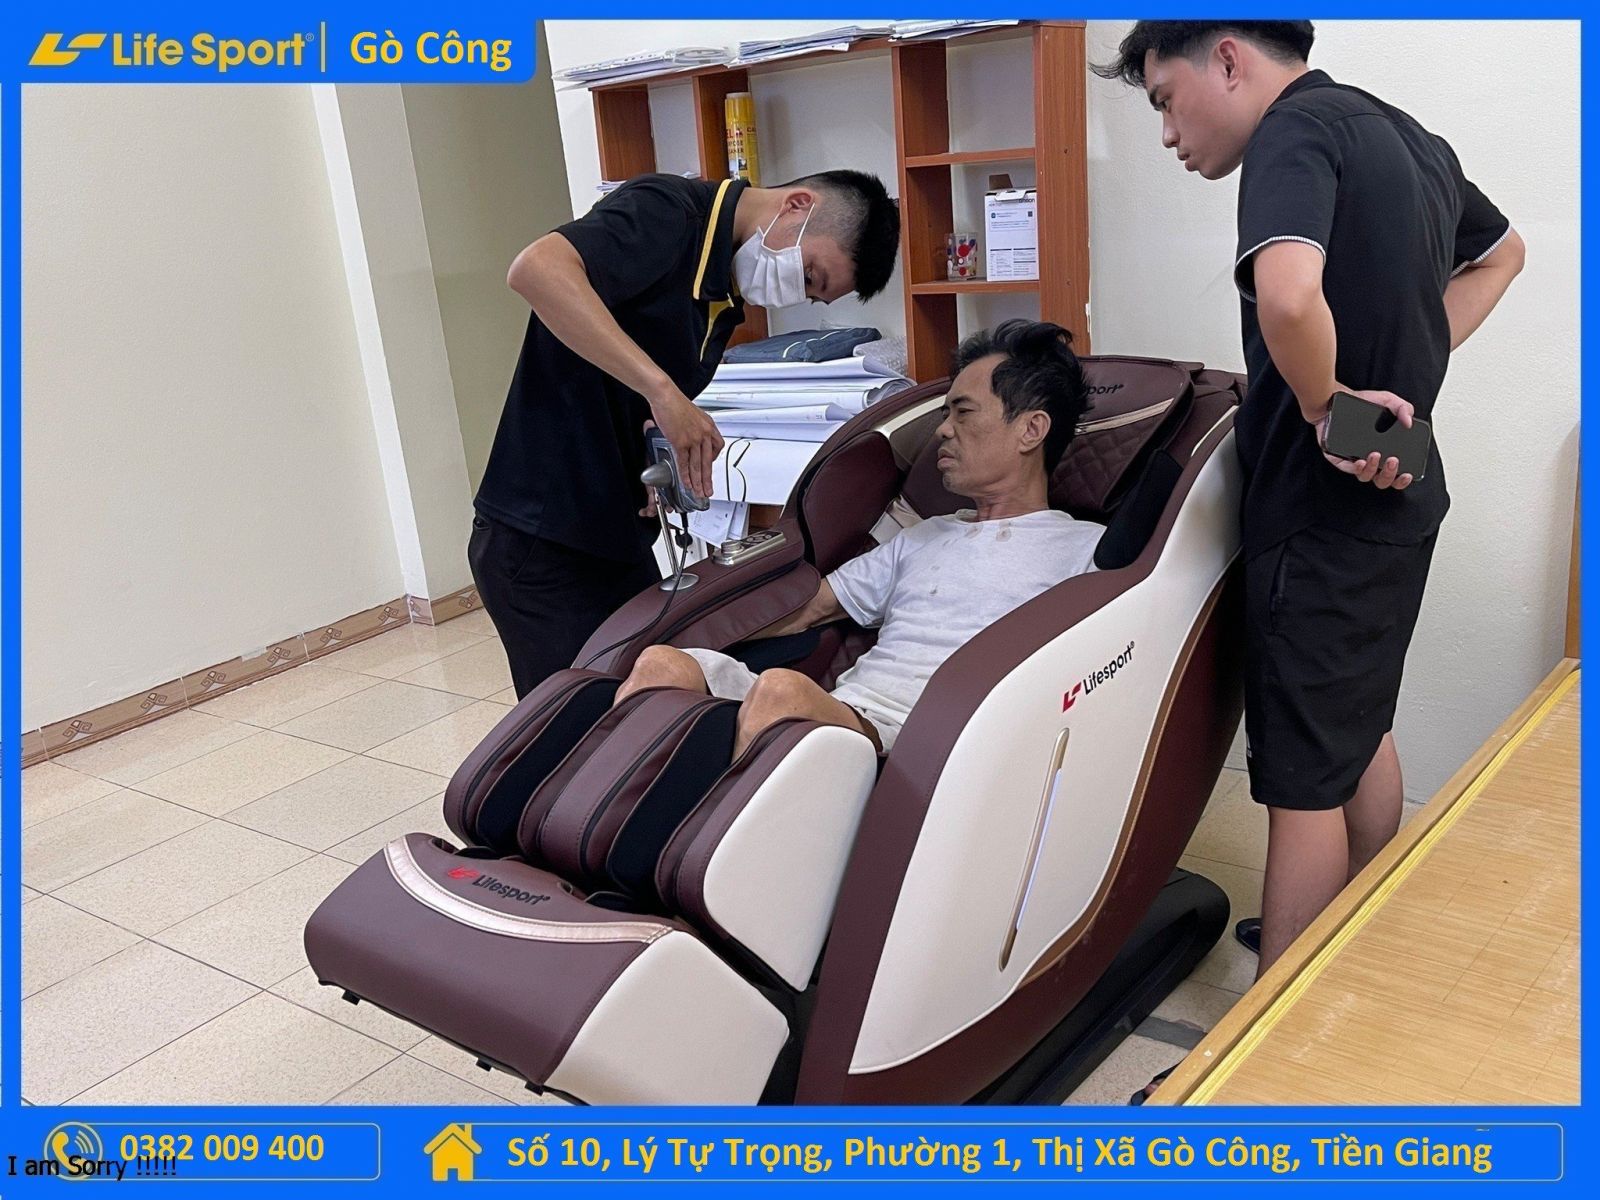 Chất lượng phục vụ tại LifeSport Gò Công - Tiền Giang 